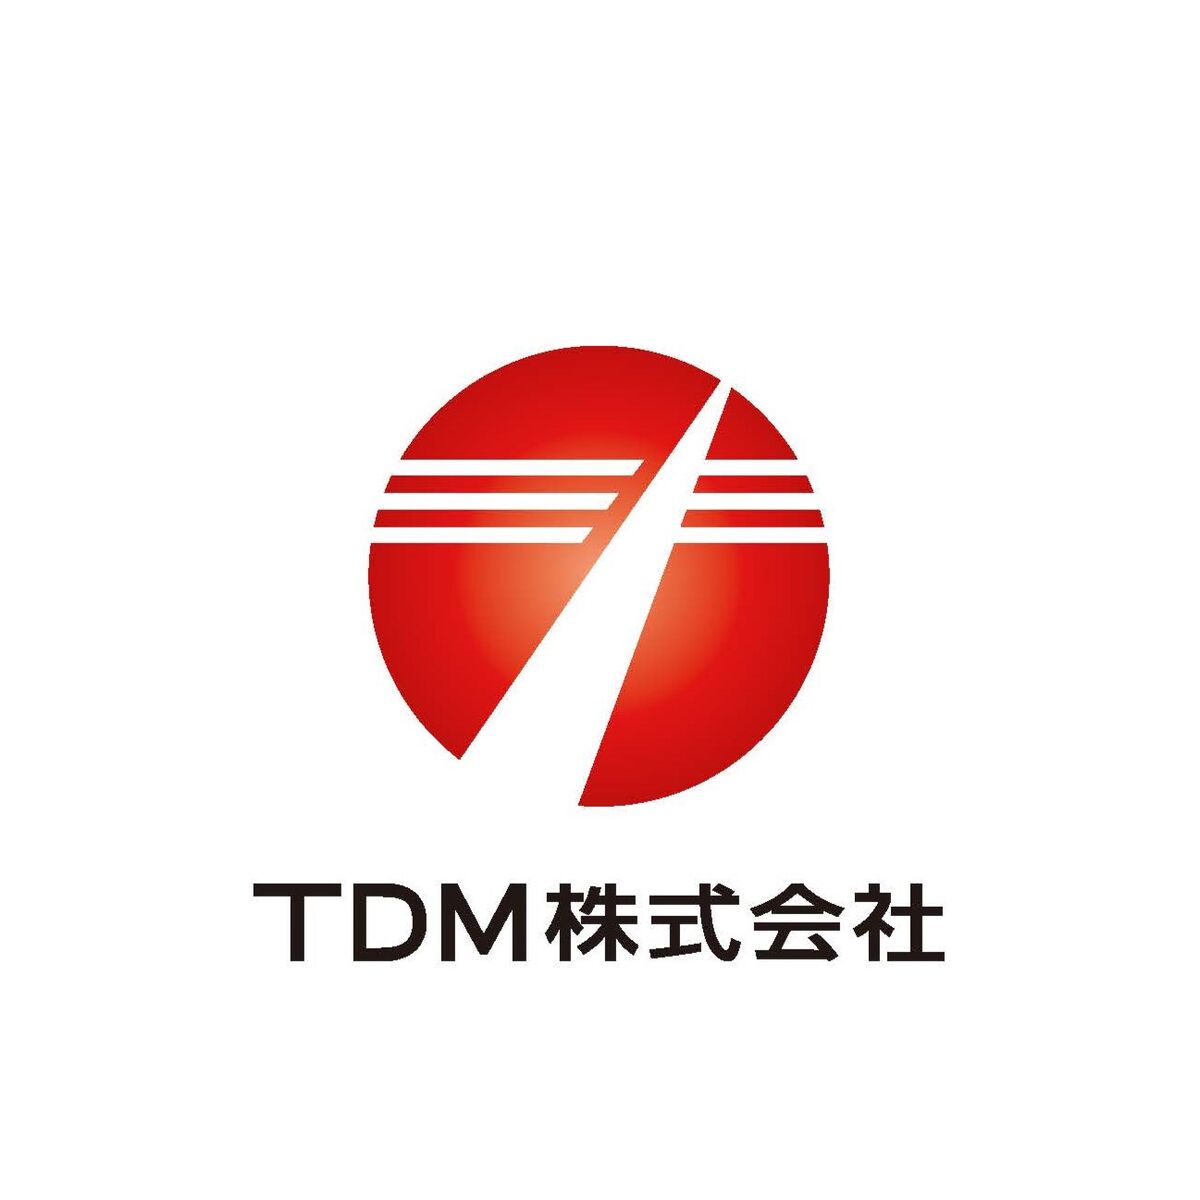 TDM株式会社